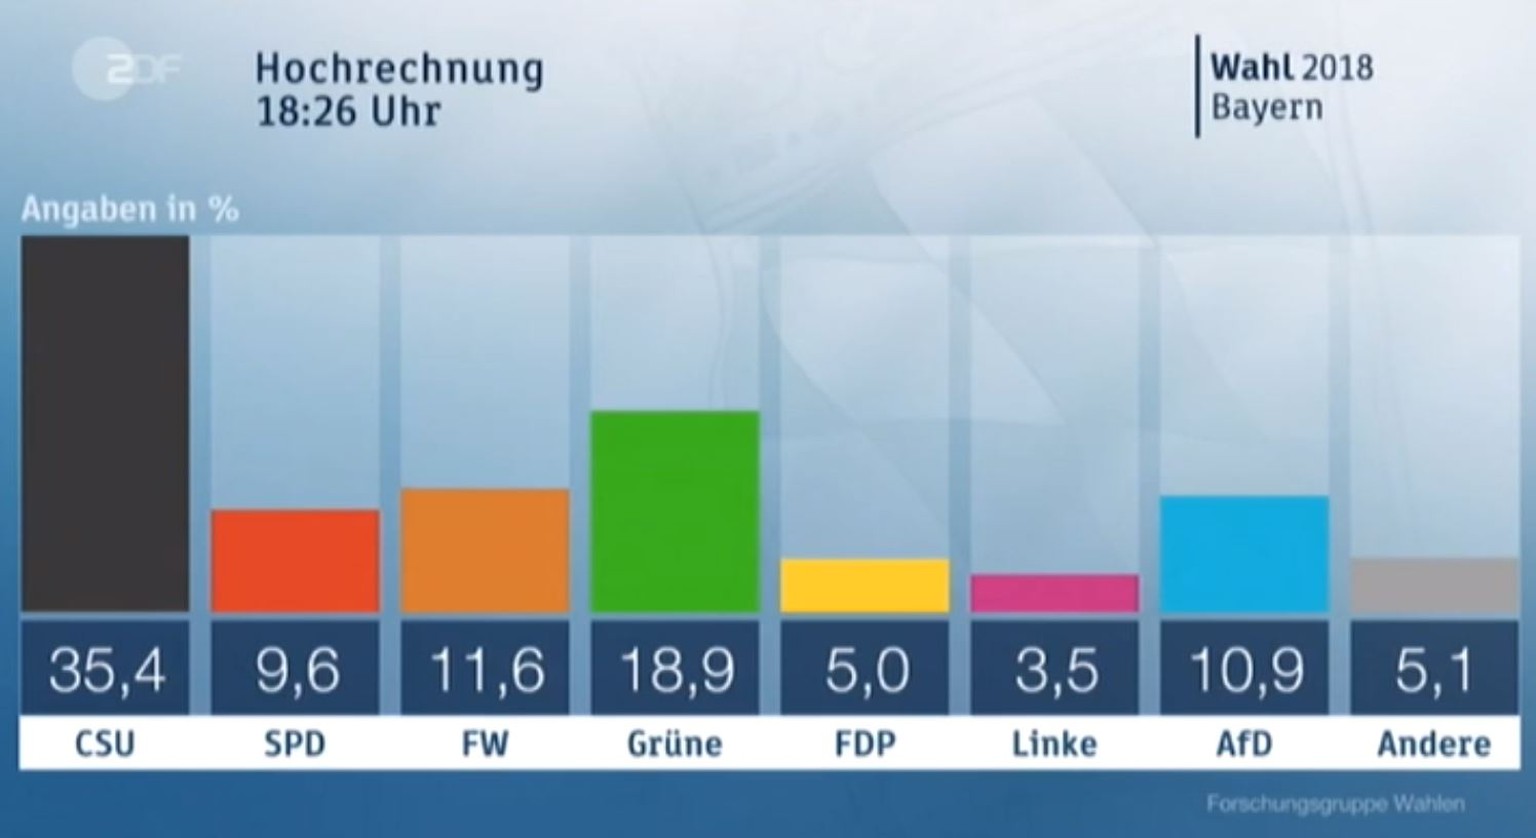 Aufgrund des komplexen Wahlsystems in Bayern können sich die Resultate im Laufe des Abends noch verändern.